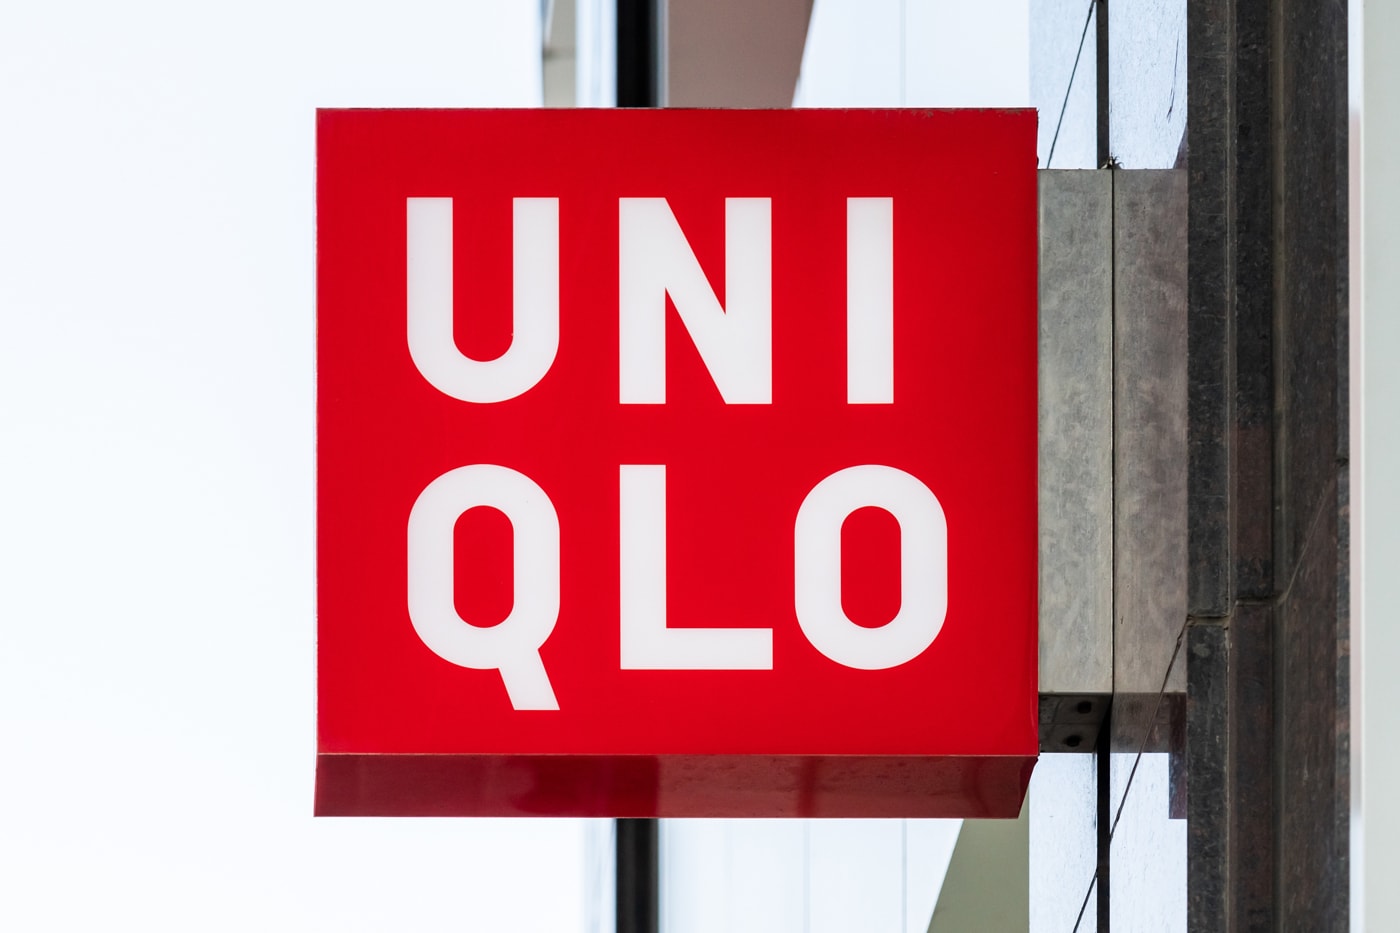 ユニクロを展開するファーストリテイリングが時価総額でアパレル世界首位になる Fast Retailing Uniqlo GU stock over Zara Inditex news